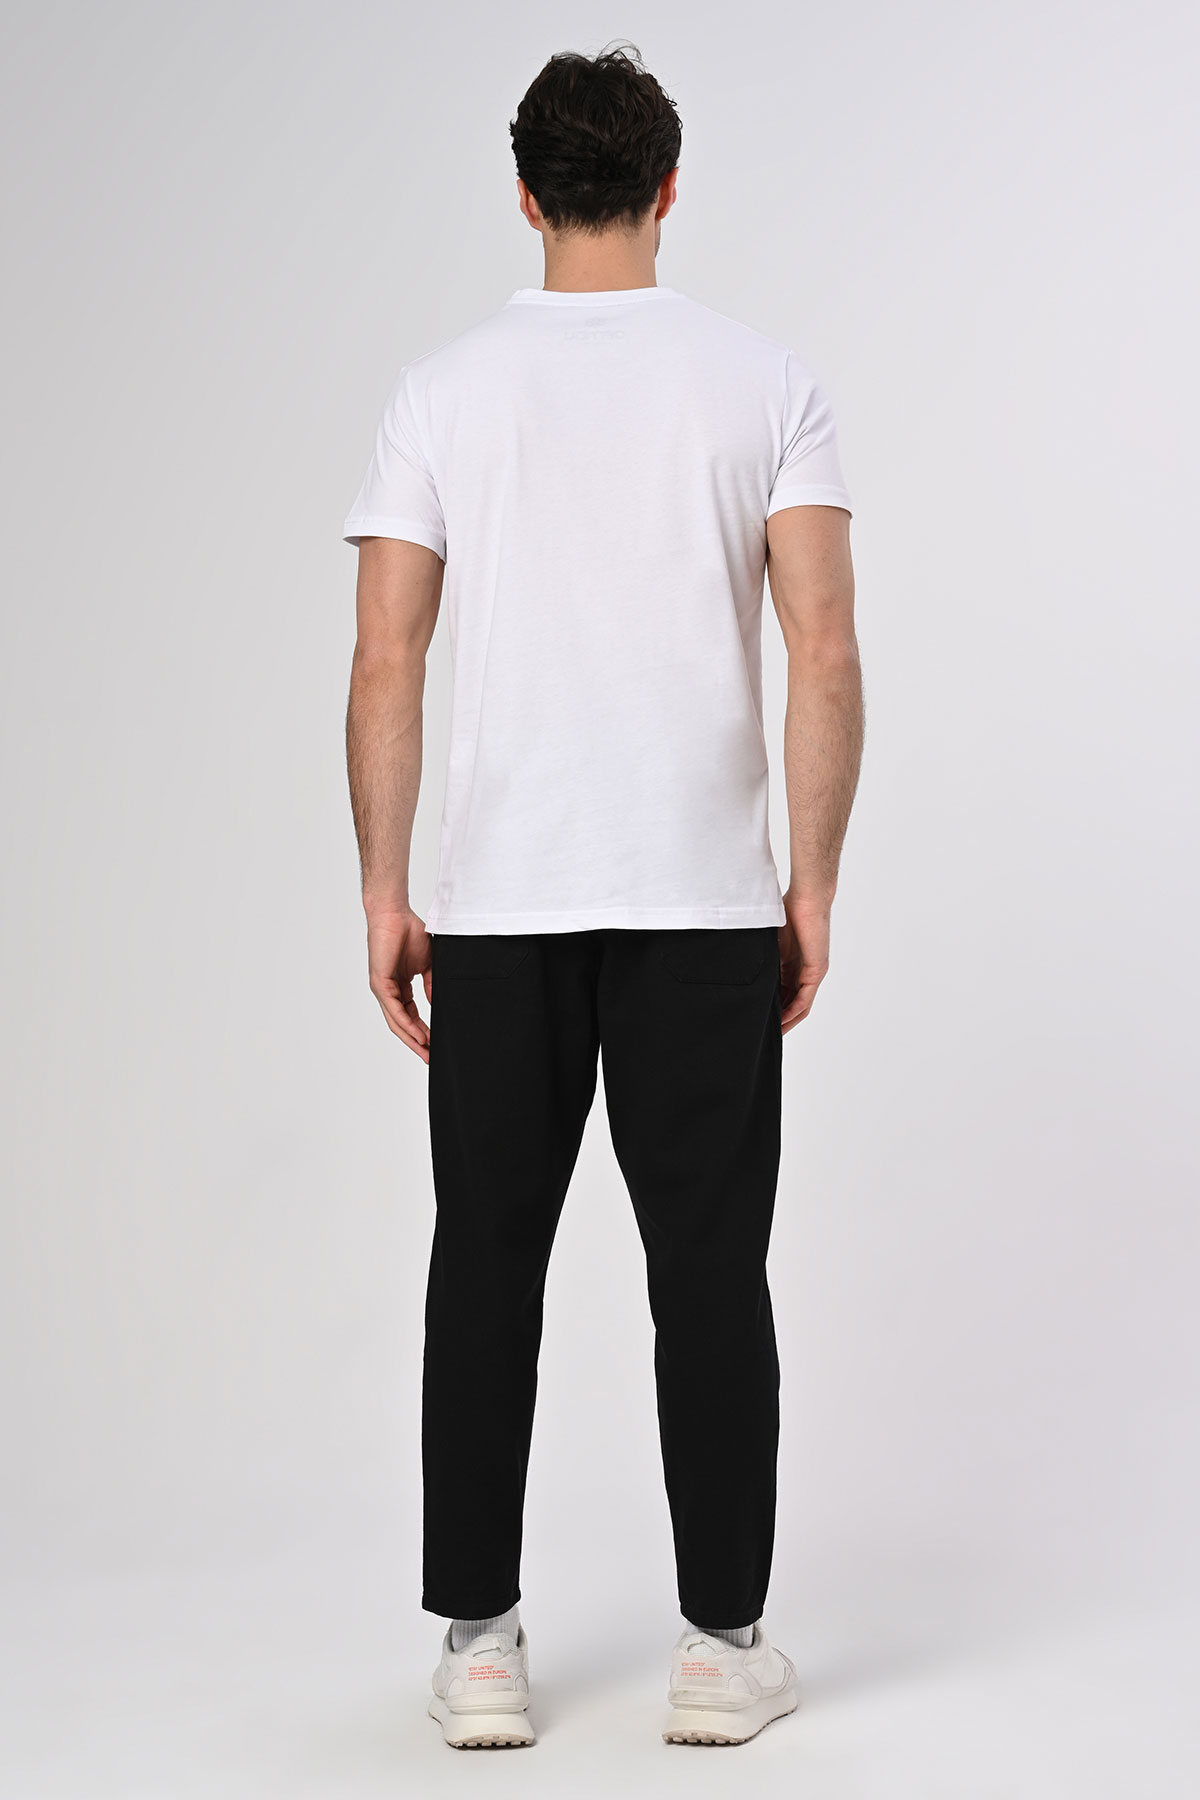 Koordinat Tasarım Pamuk Bisiklet Yaka Beyaz T-shirt 22’